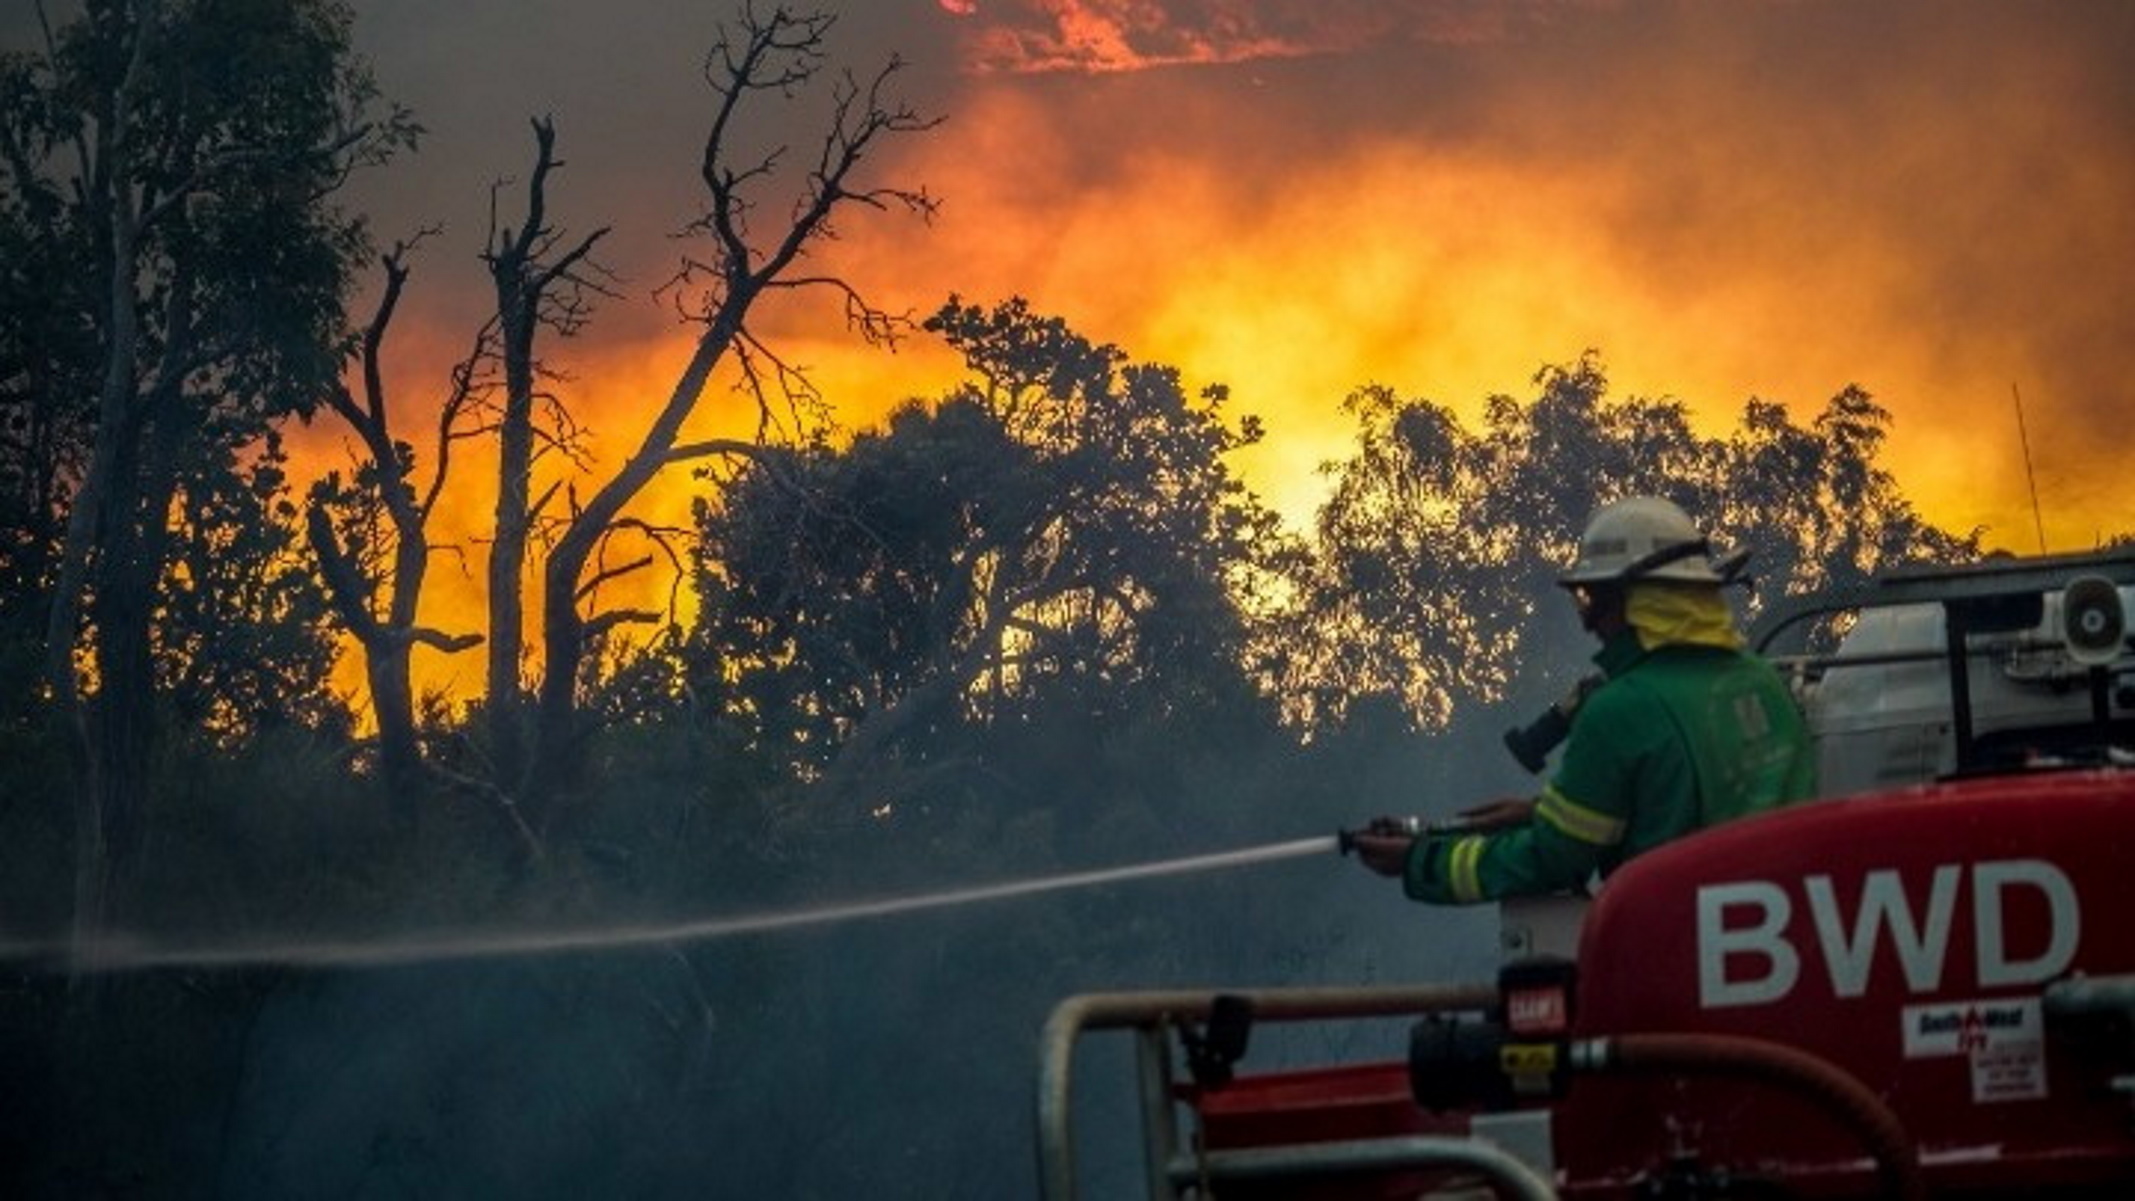 Αυστραλία: Τεράστιες φωτιές και καύσωνας απειλούν το Περθ – Εκκενώνονται κατοικημένες περιοχές